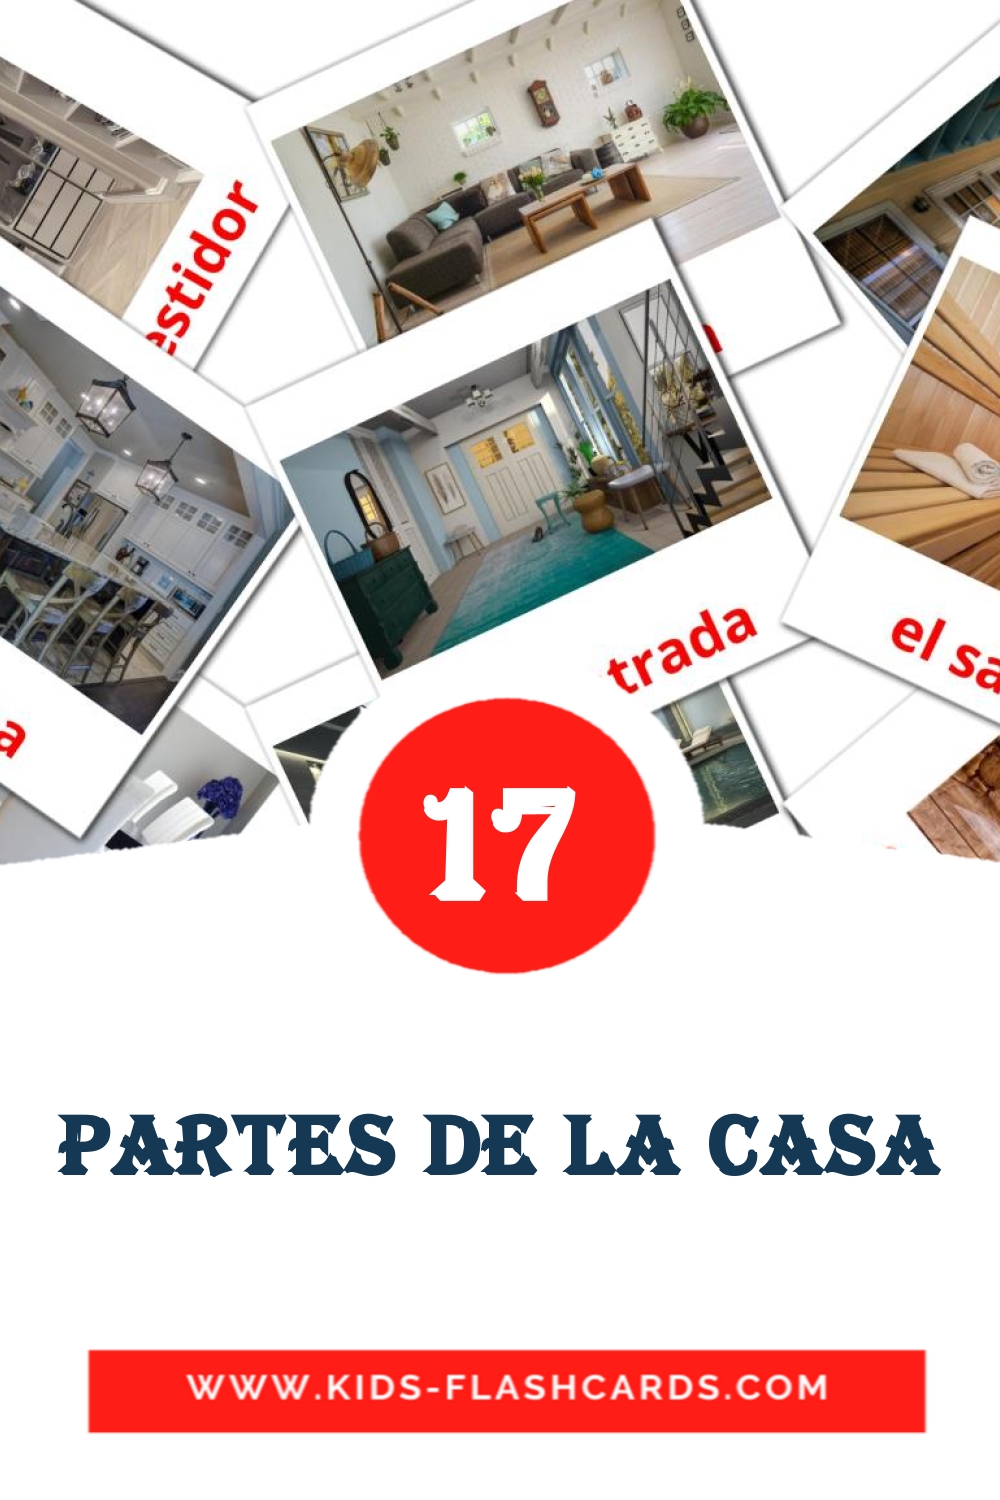 17 partes de la casa fotokaarten voor kleuters in het ahmaric